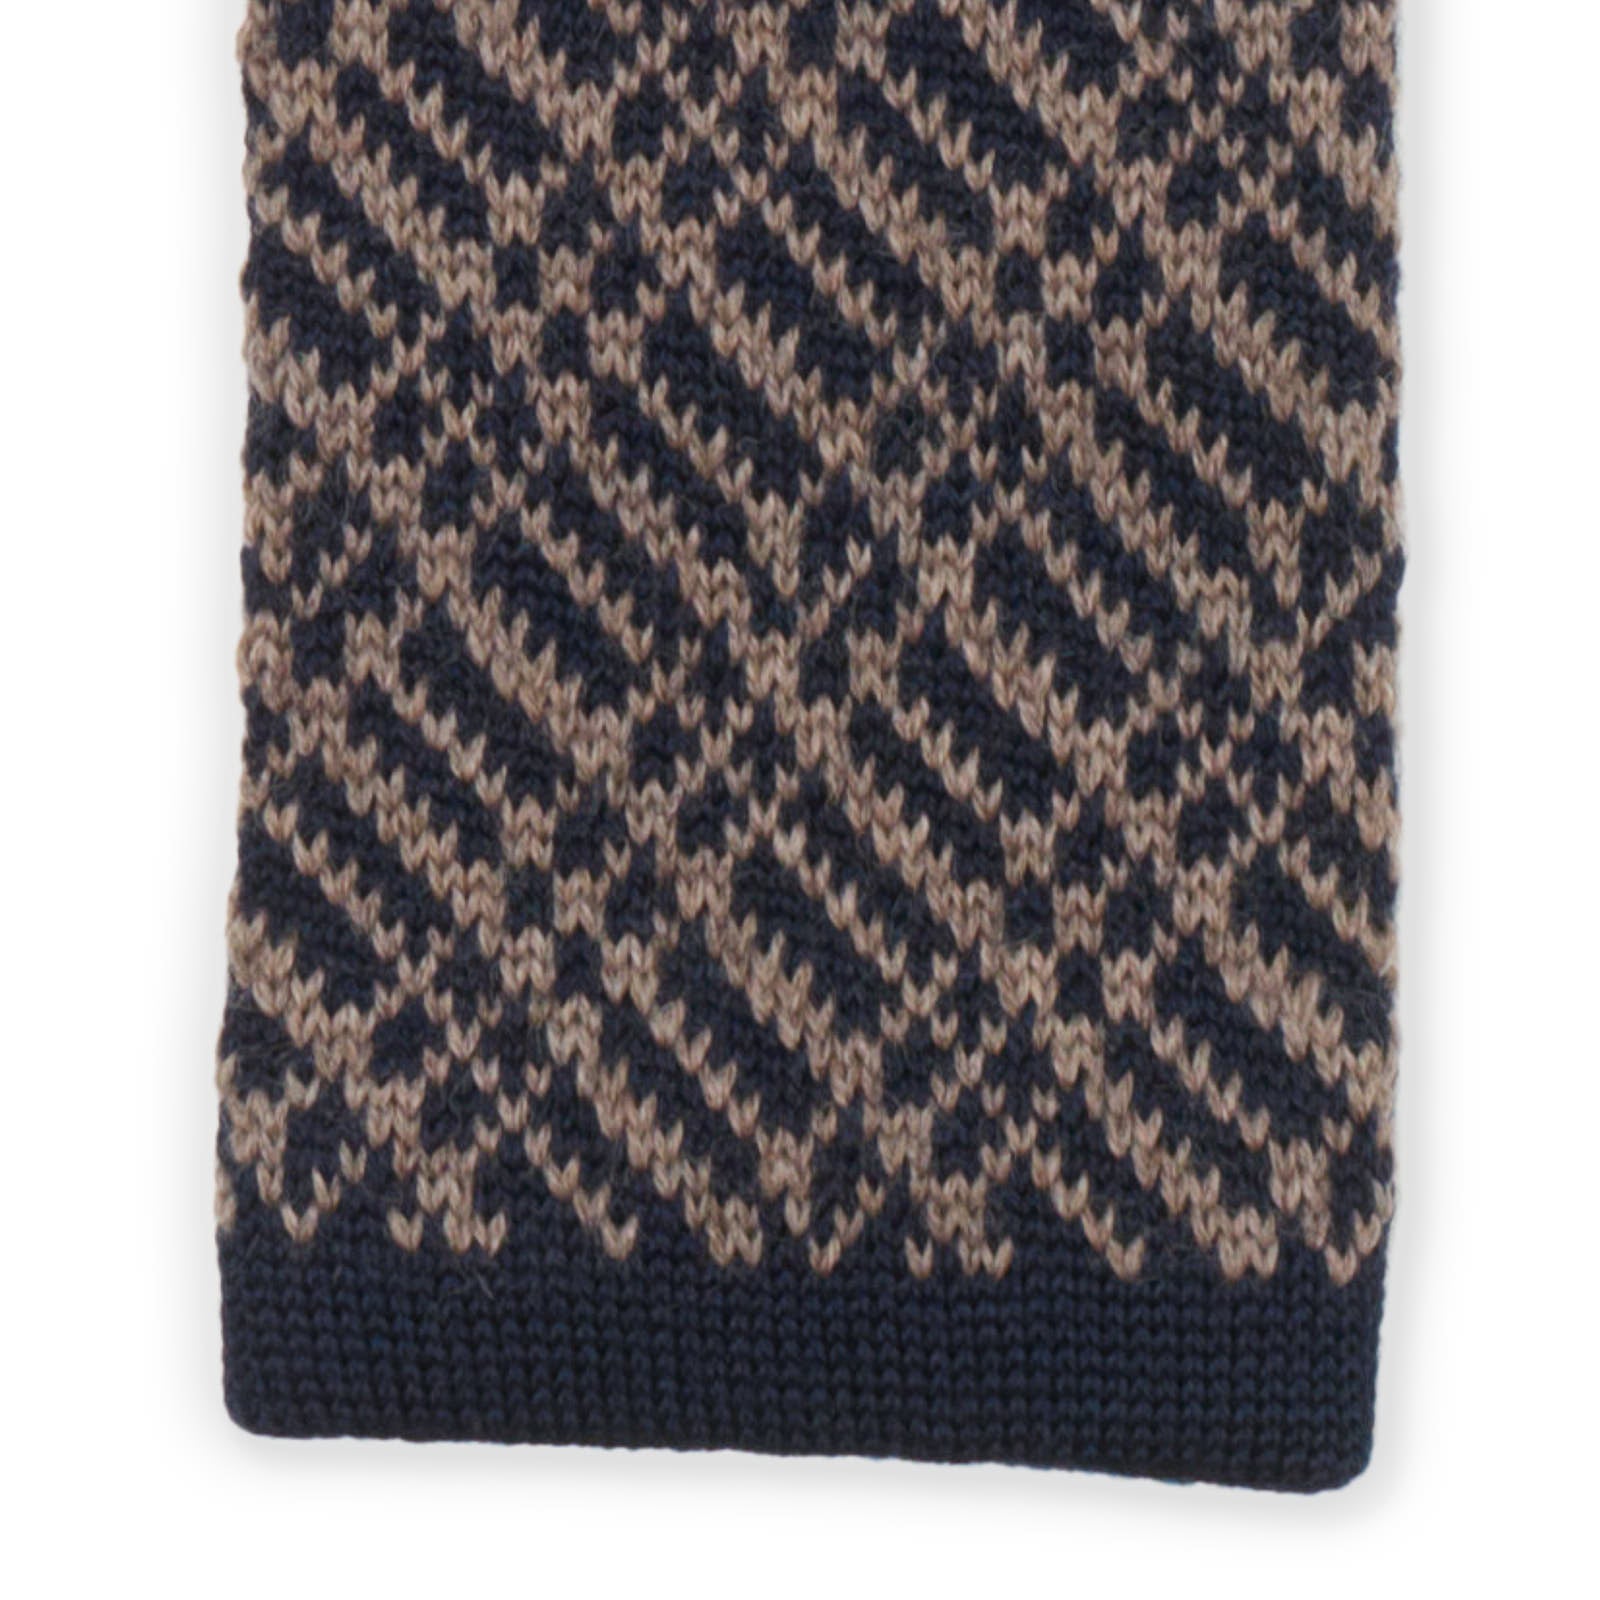 MATTABISCH FOR VANNUCCI Navy Blue-Brown Geometric Pattern Wool Knit Tie NEW